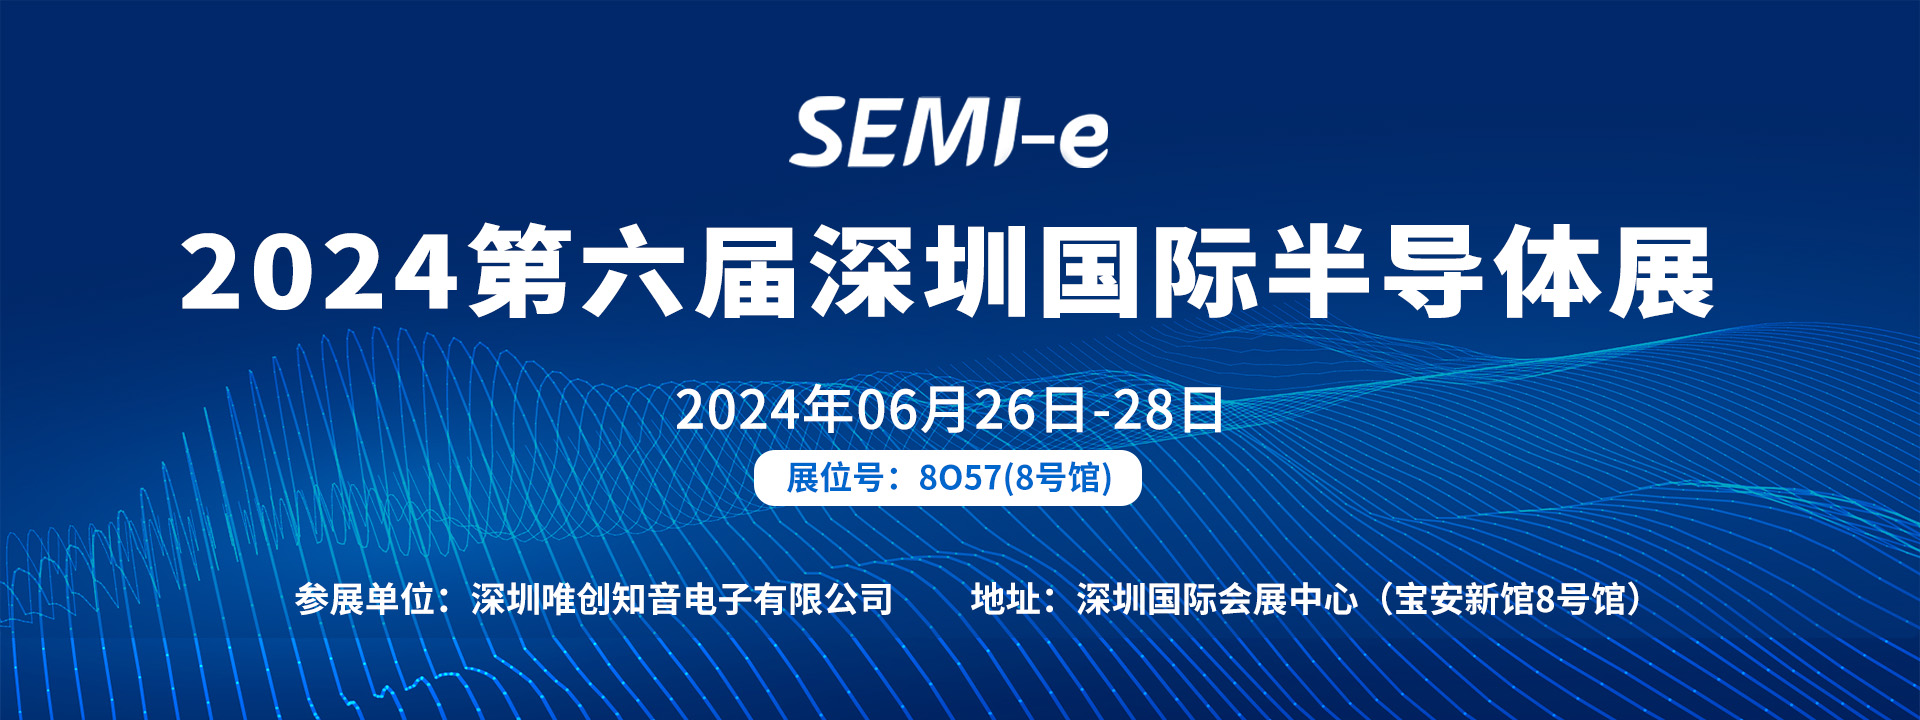 【SEMI-e 国际半导体深圳展】| 06月26-28日唯创知音